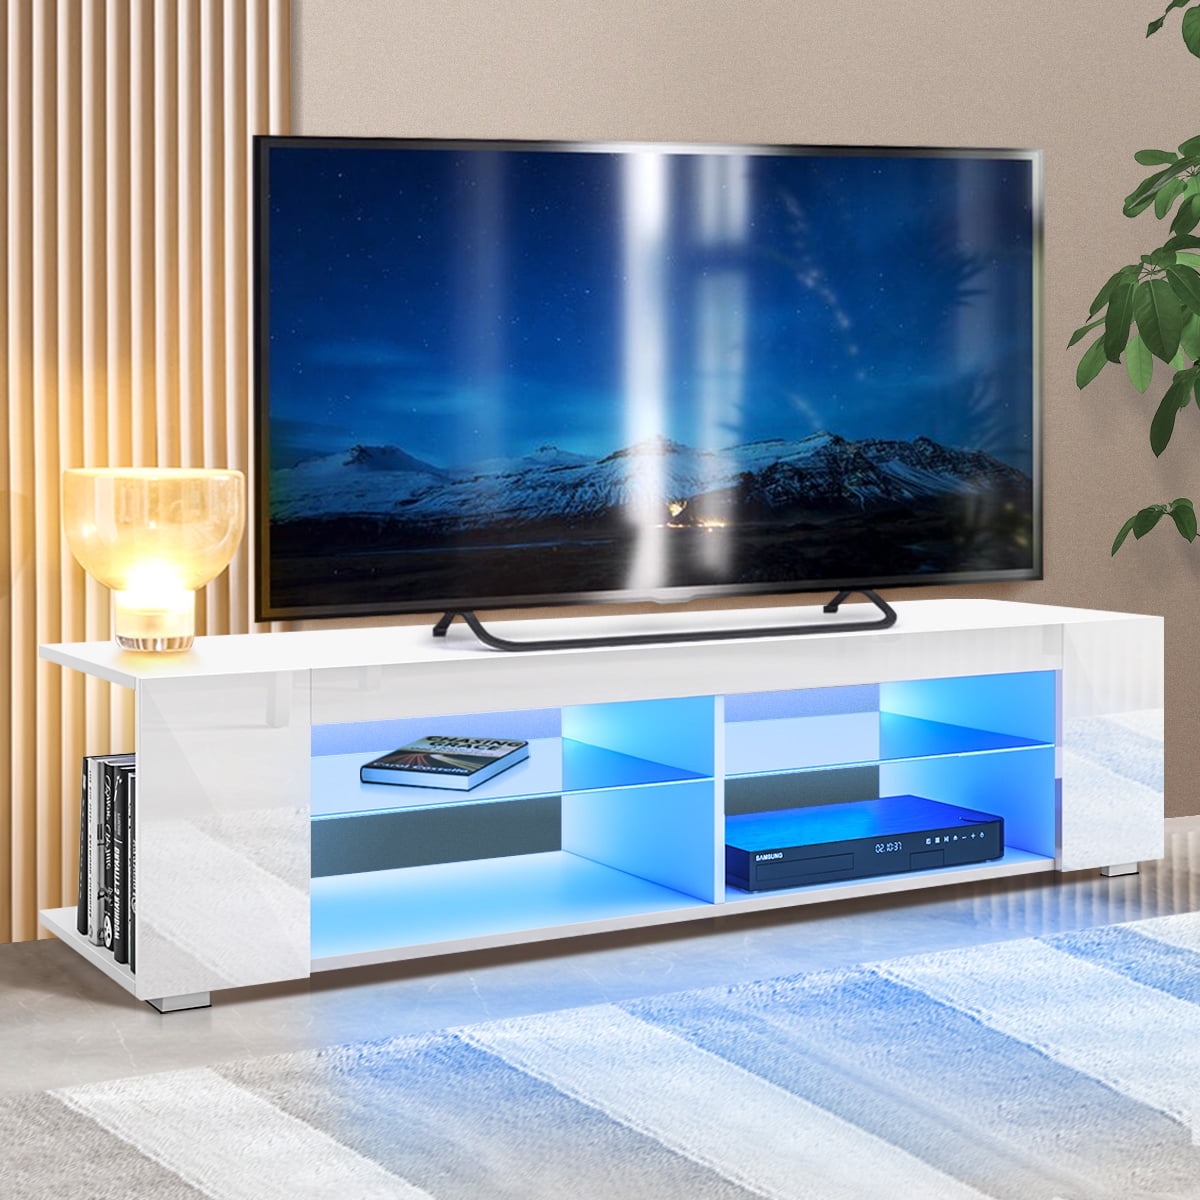 Living room furniture set glass cabinet TV unit stand display LED lights shelf 